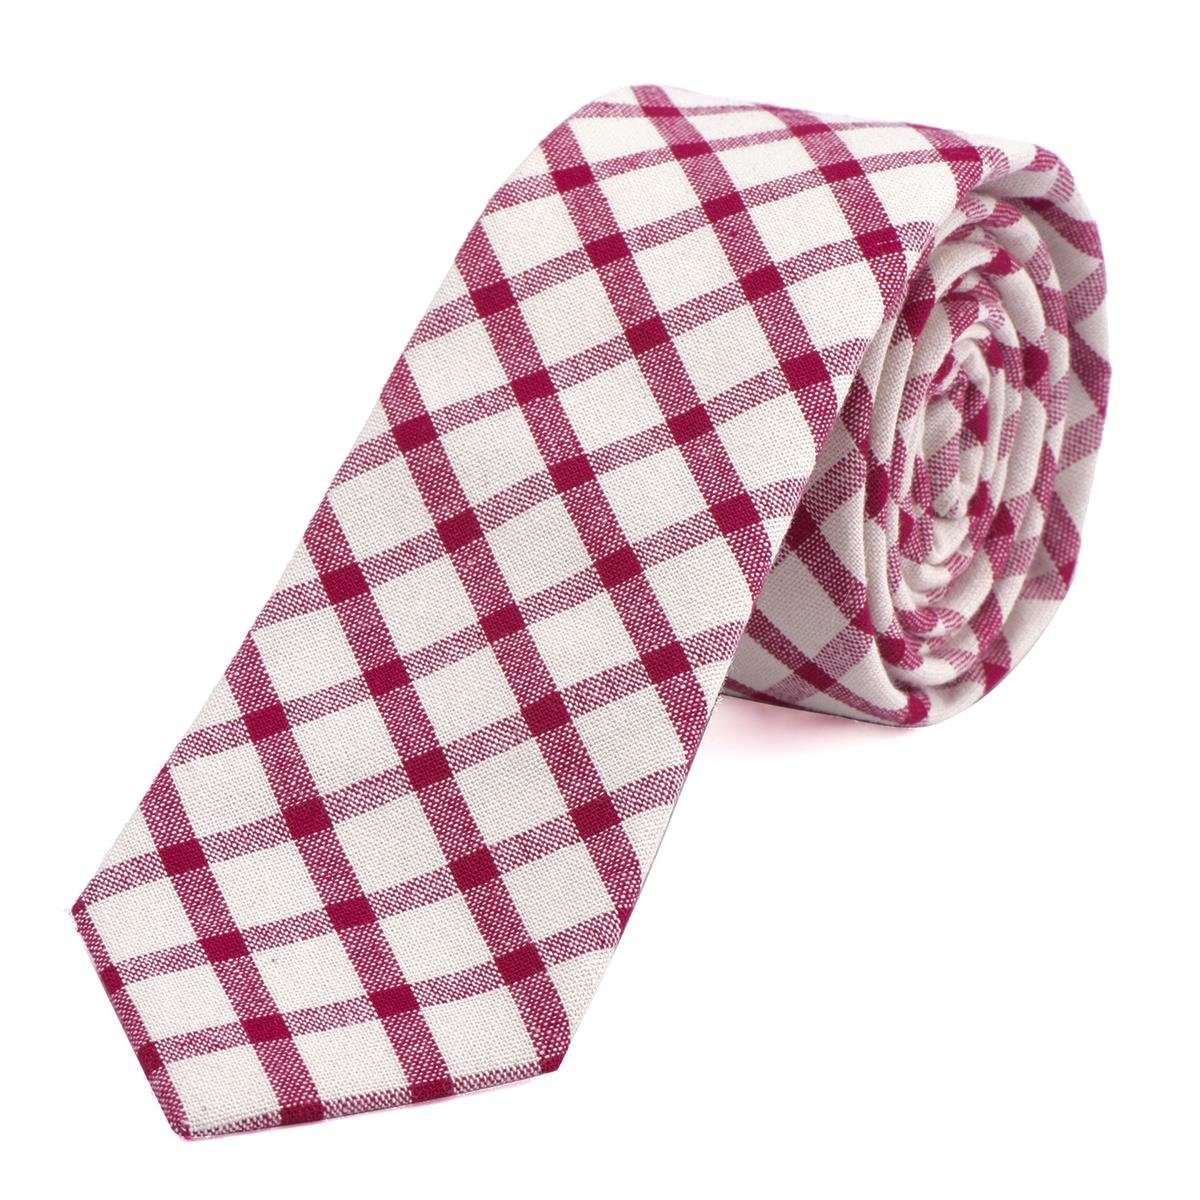 DonDon Krawatte Herren Krawatte 6 cm mit Karos oder Streifen (Packung, 1-St., 1x Krawatte) Baumwolle, kariert oder gestreift, für Büro oder festliche Veranstaltungen creme-rot kariert